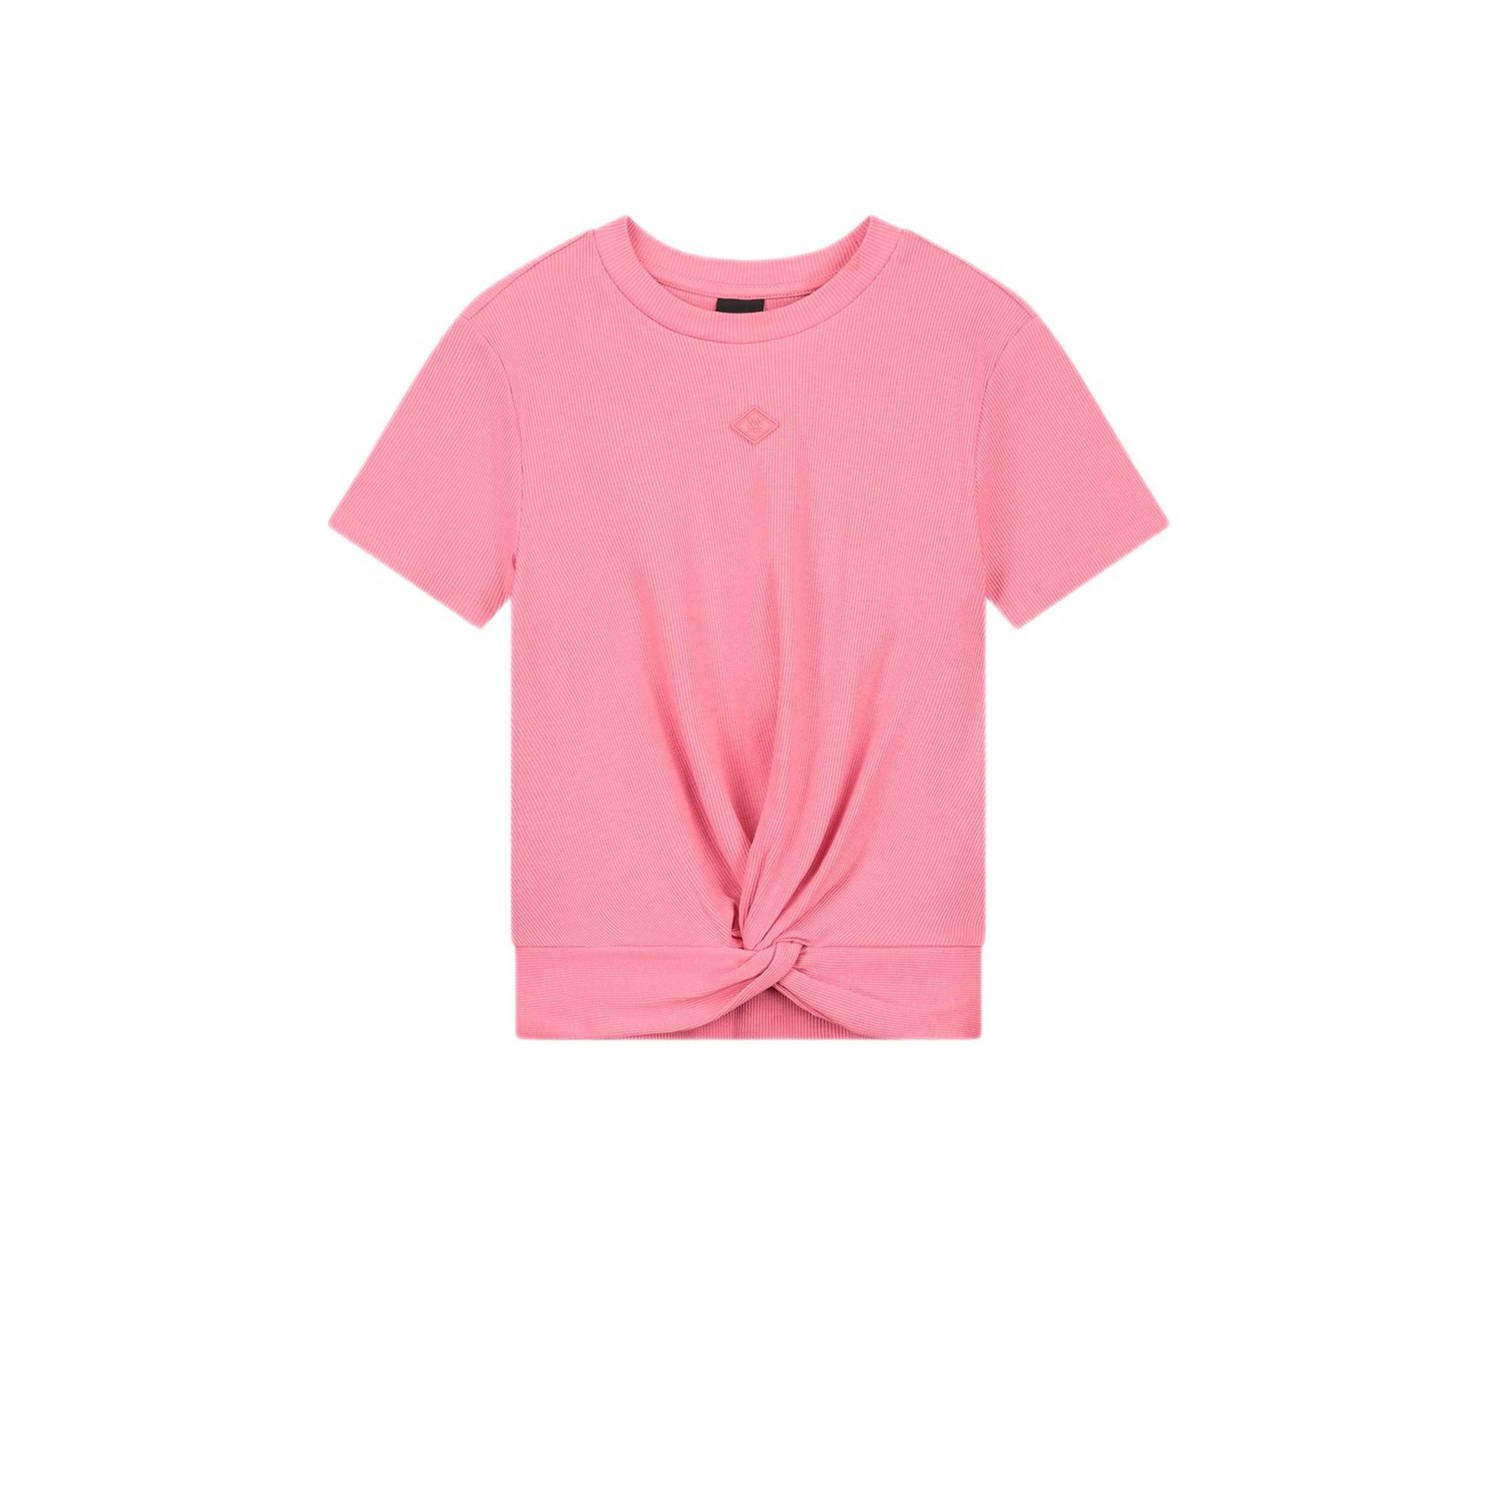 NIK&NIK T-shirt Knot roze